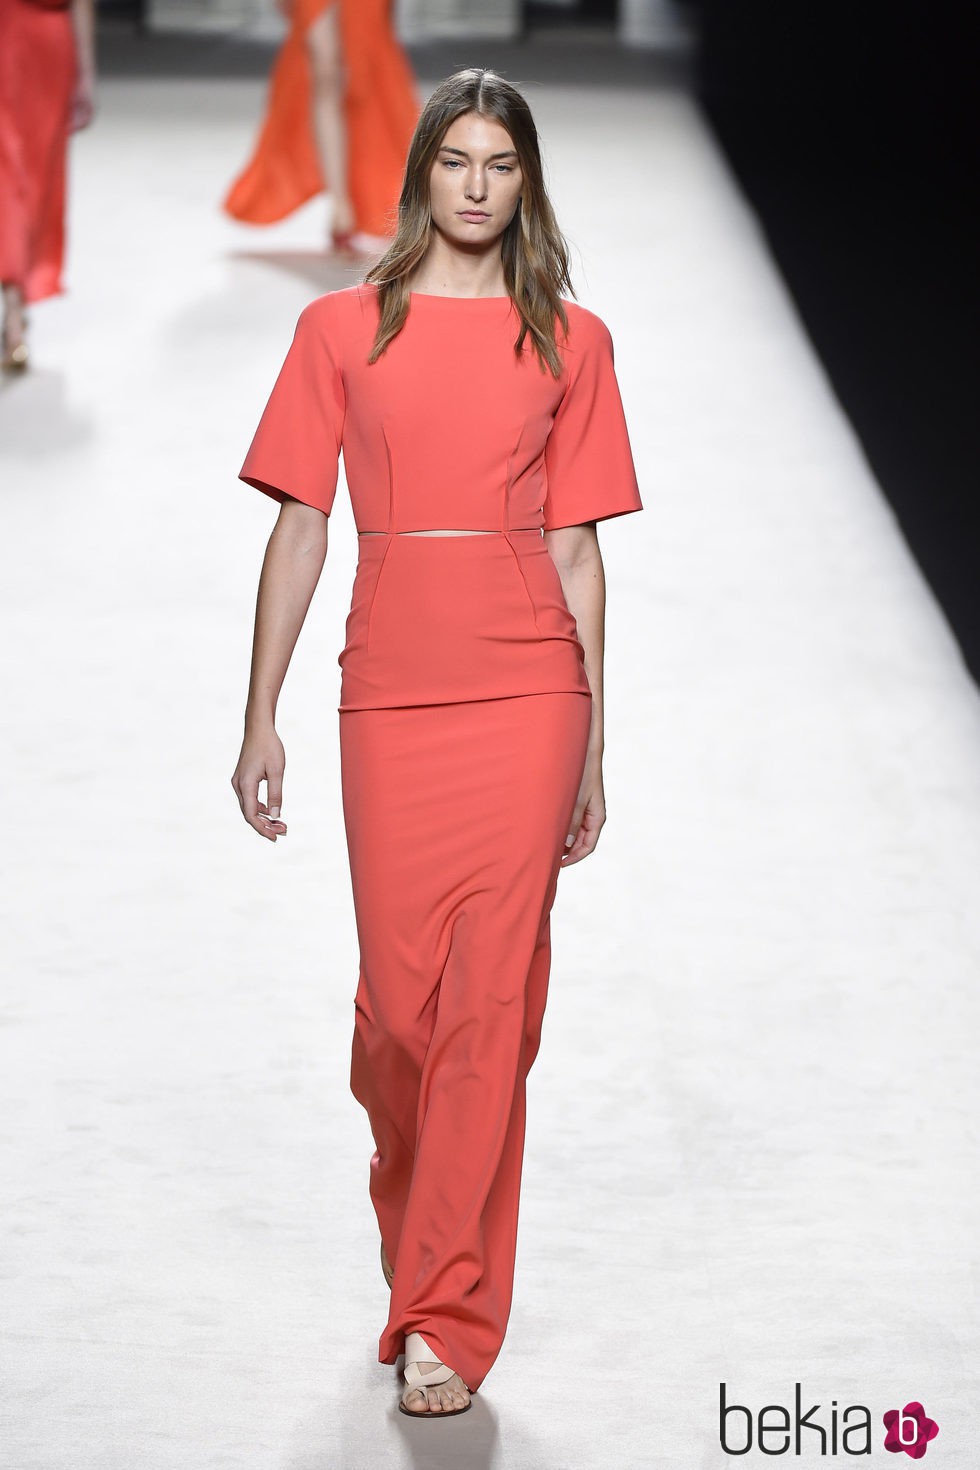 Vestido coral de Juanjo Oliva para primavera/verano 2015 en Madrid Fashion Week